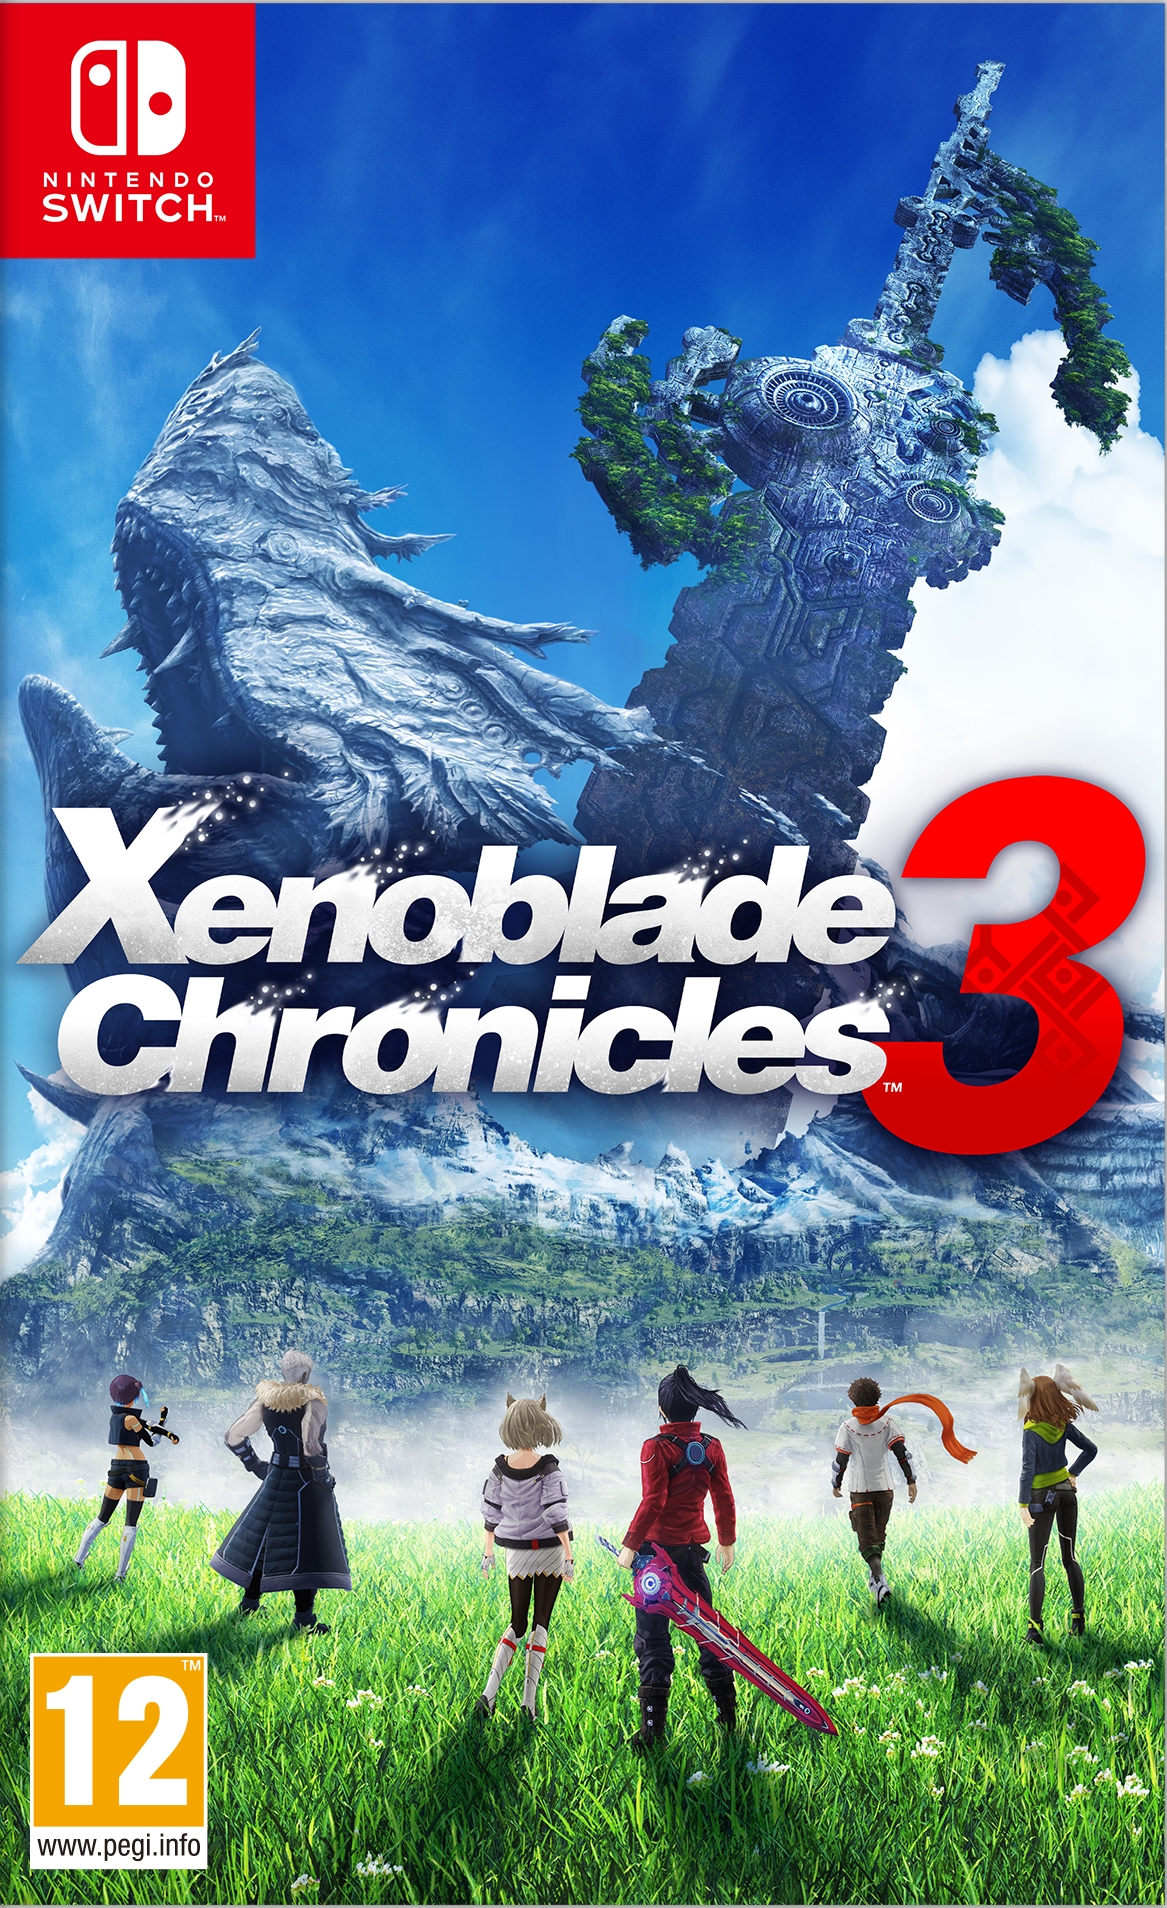 jaquette reduite de Xenoblade Chronicles 3 sur Switch